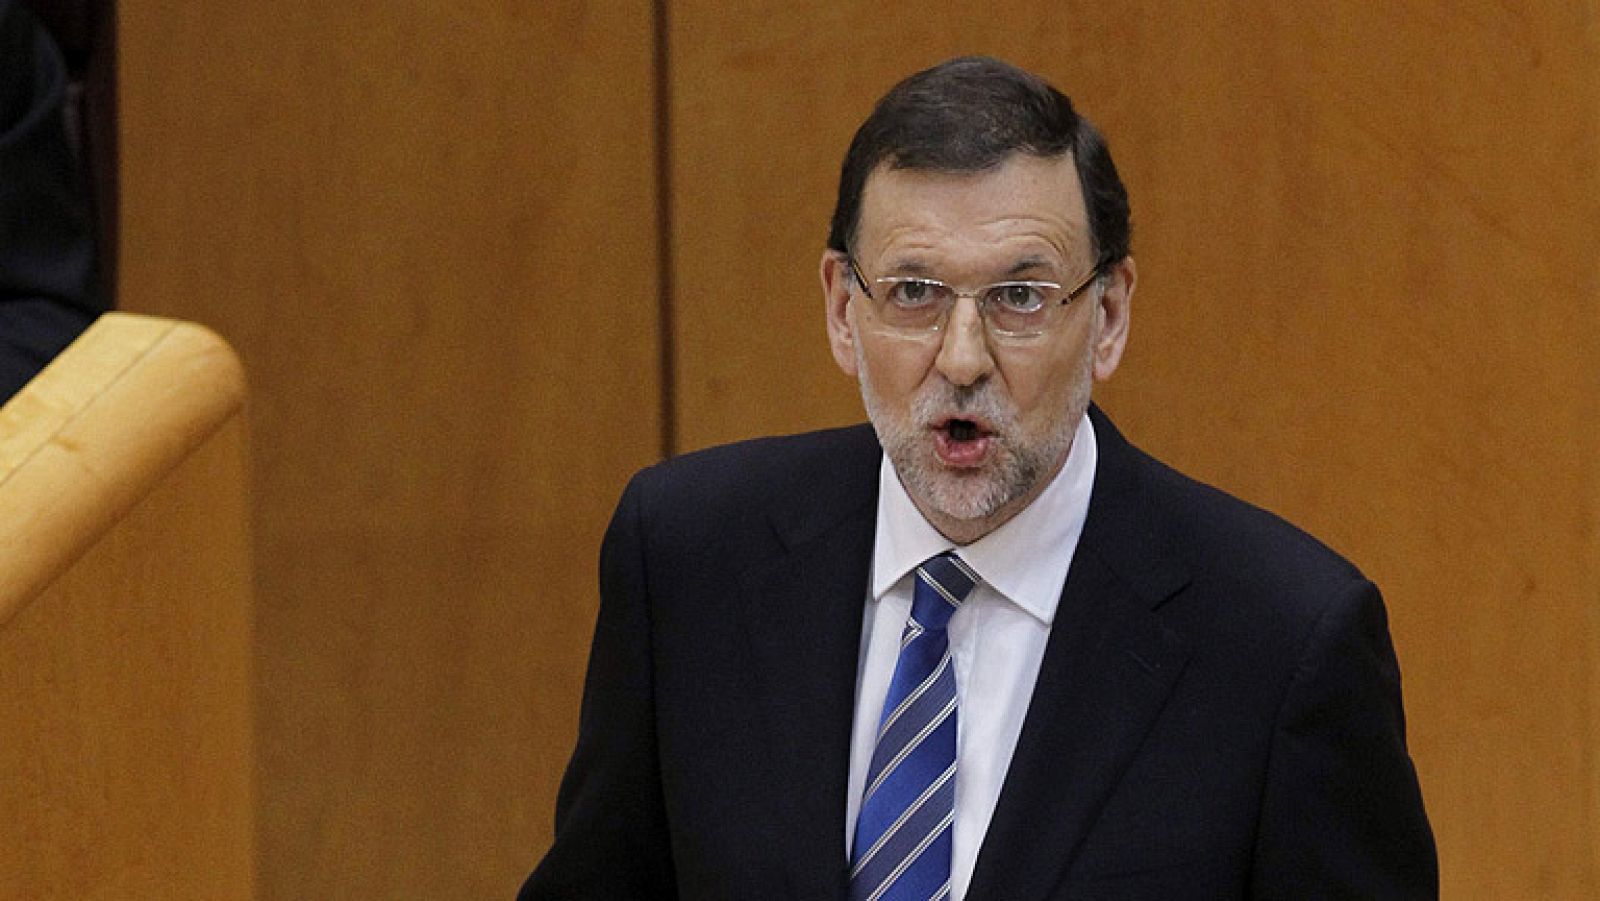 Rajoy: "Dí crédito al señor Bárcenas porque era una persona de confianza en el partido"